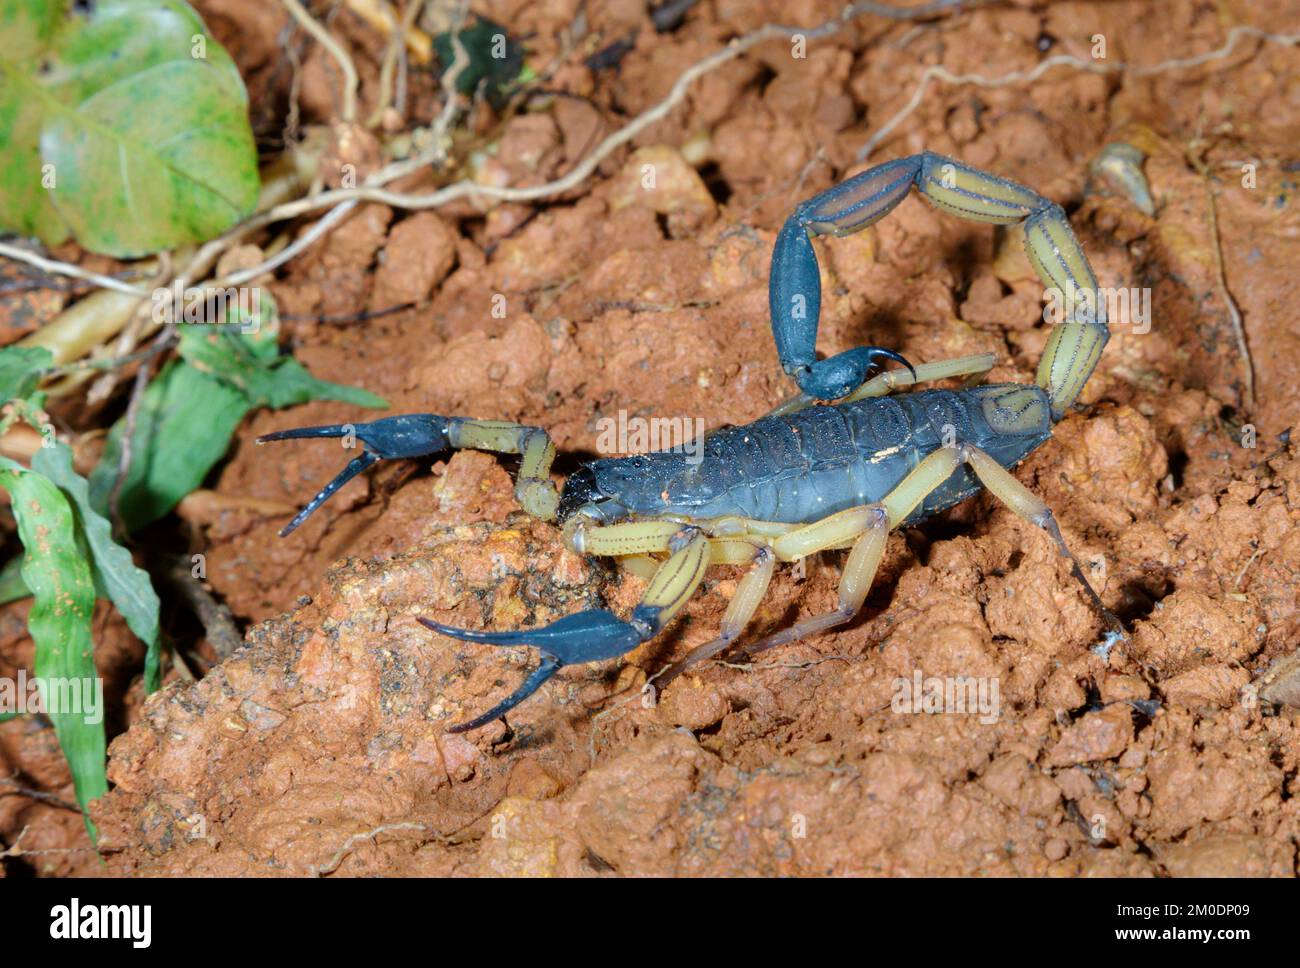 Scorpione di corteccia bicolore (Centruroides bicolore) nella foresta pluviale, Penisola di Osa, Puntarenas, Costa Rica. Foto Stock